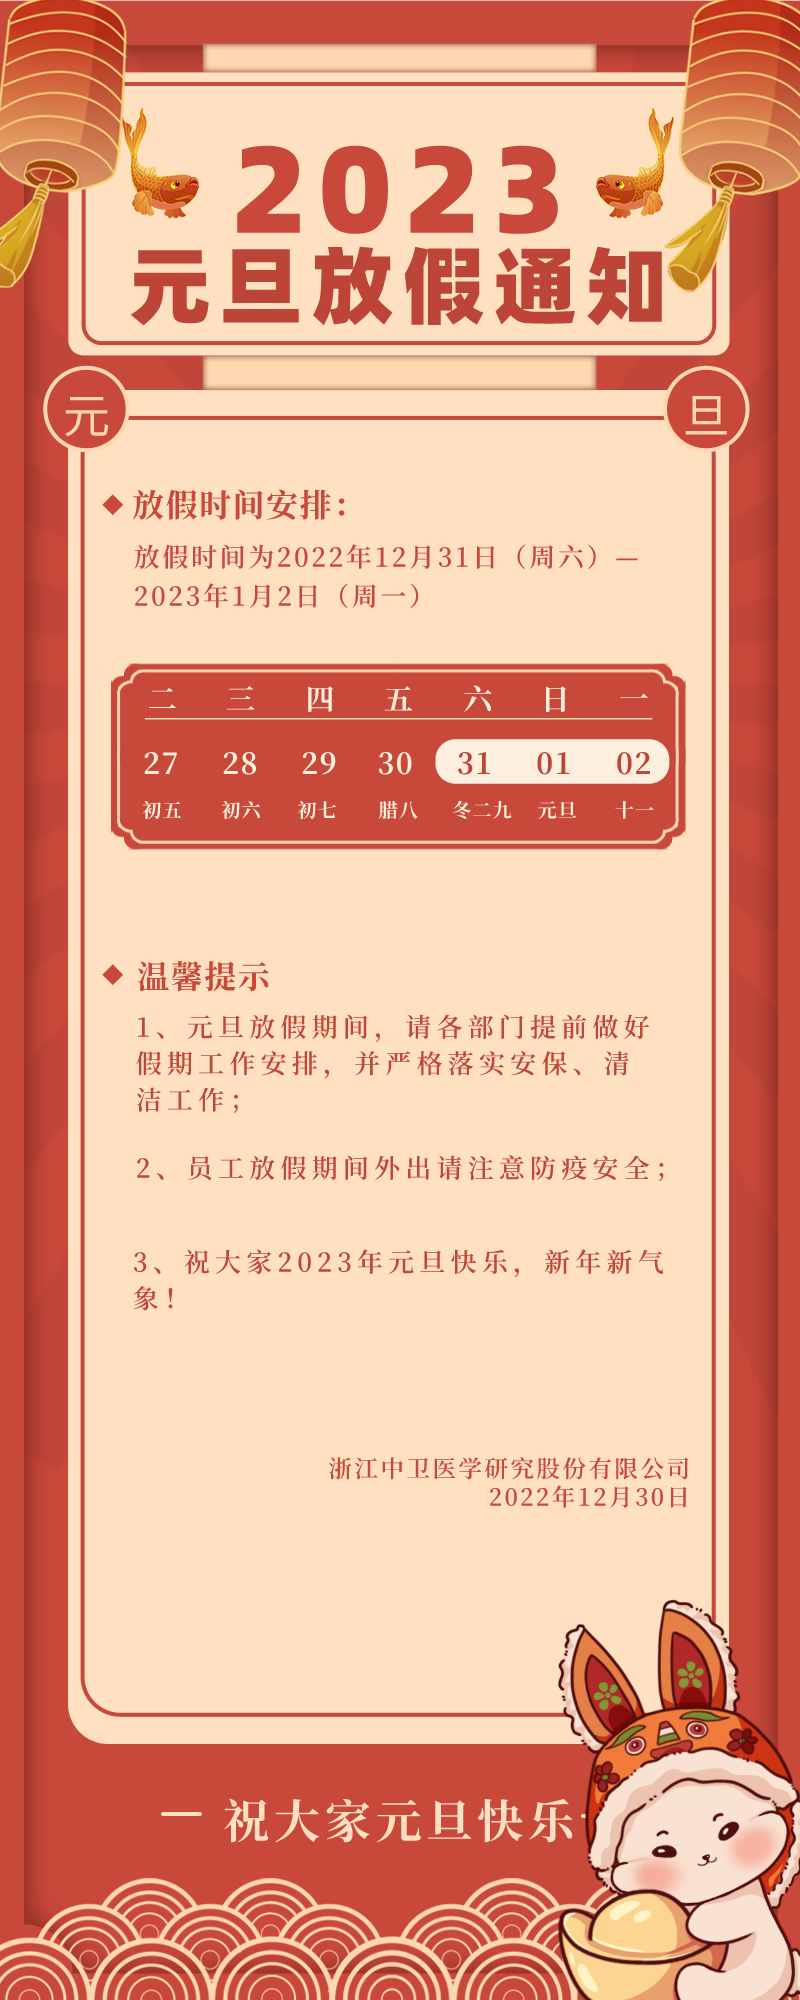 紅色復古風元旦放假通知節日節點長圖海報__2022-12-30+14_16_24.png